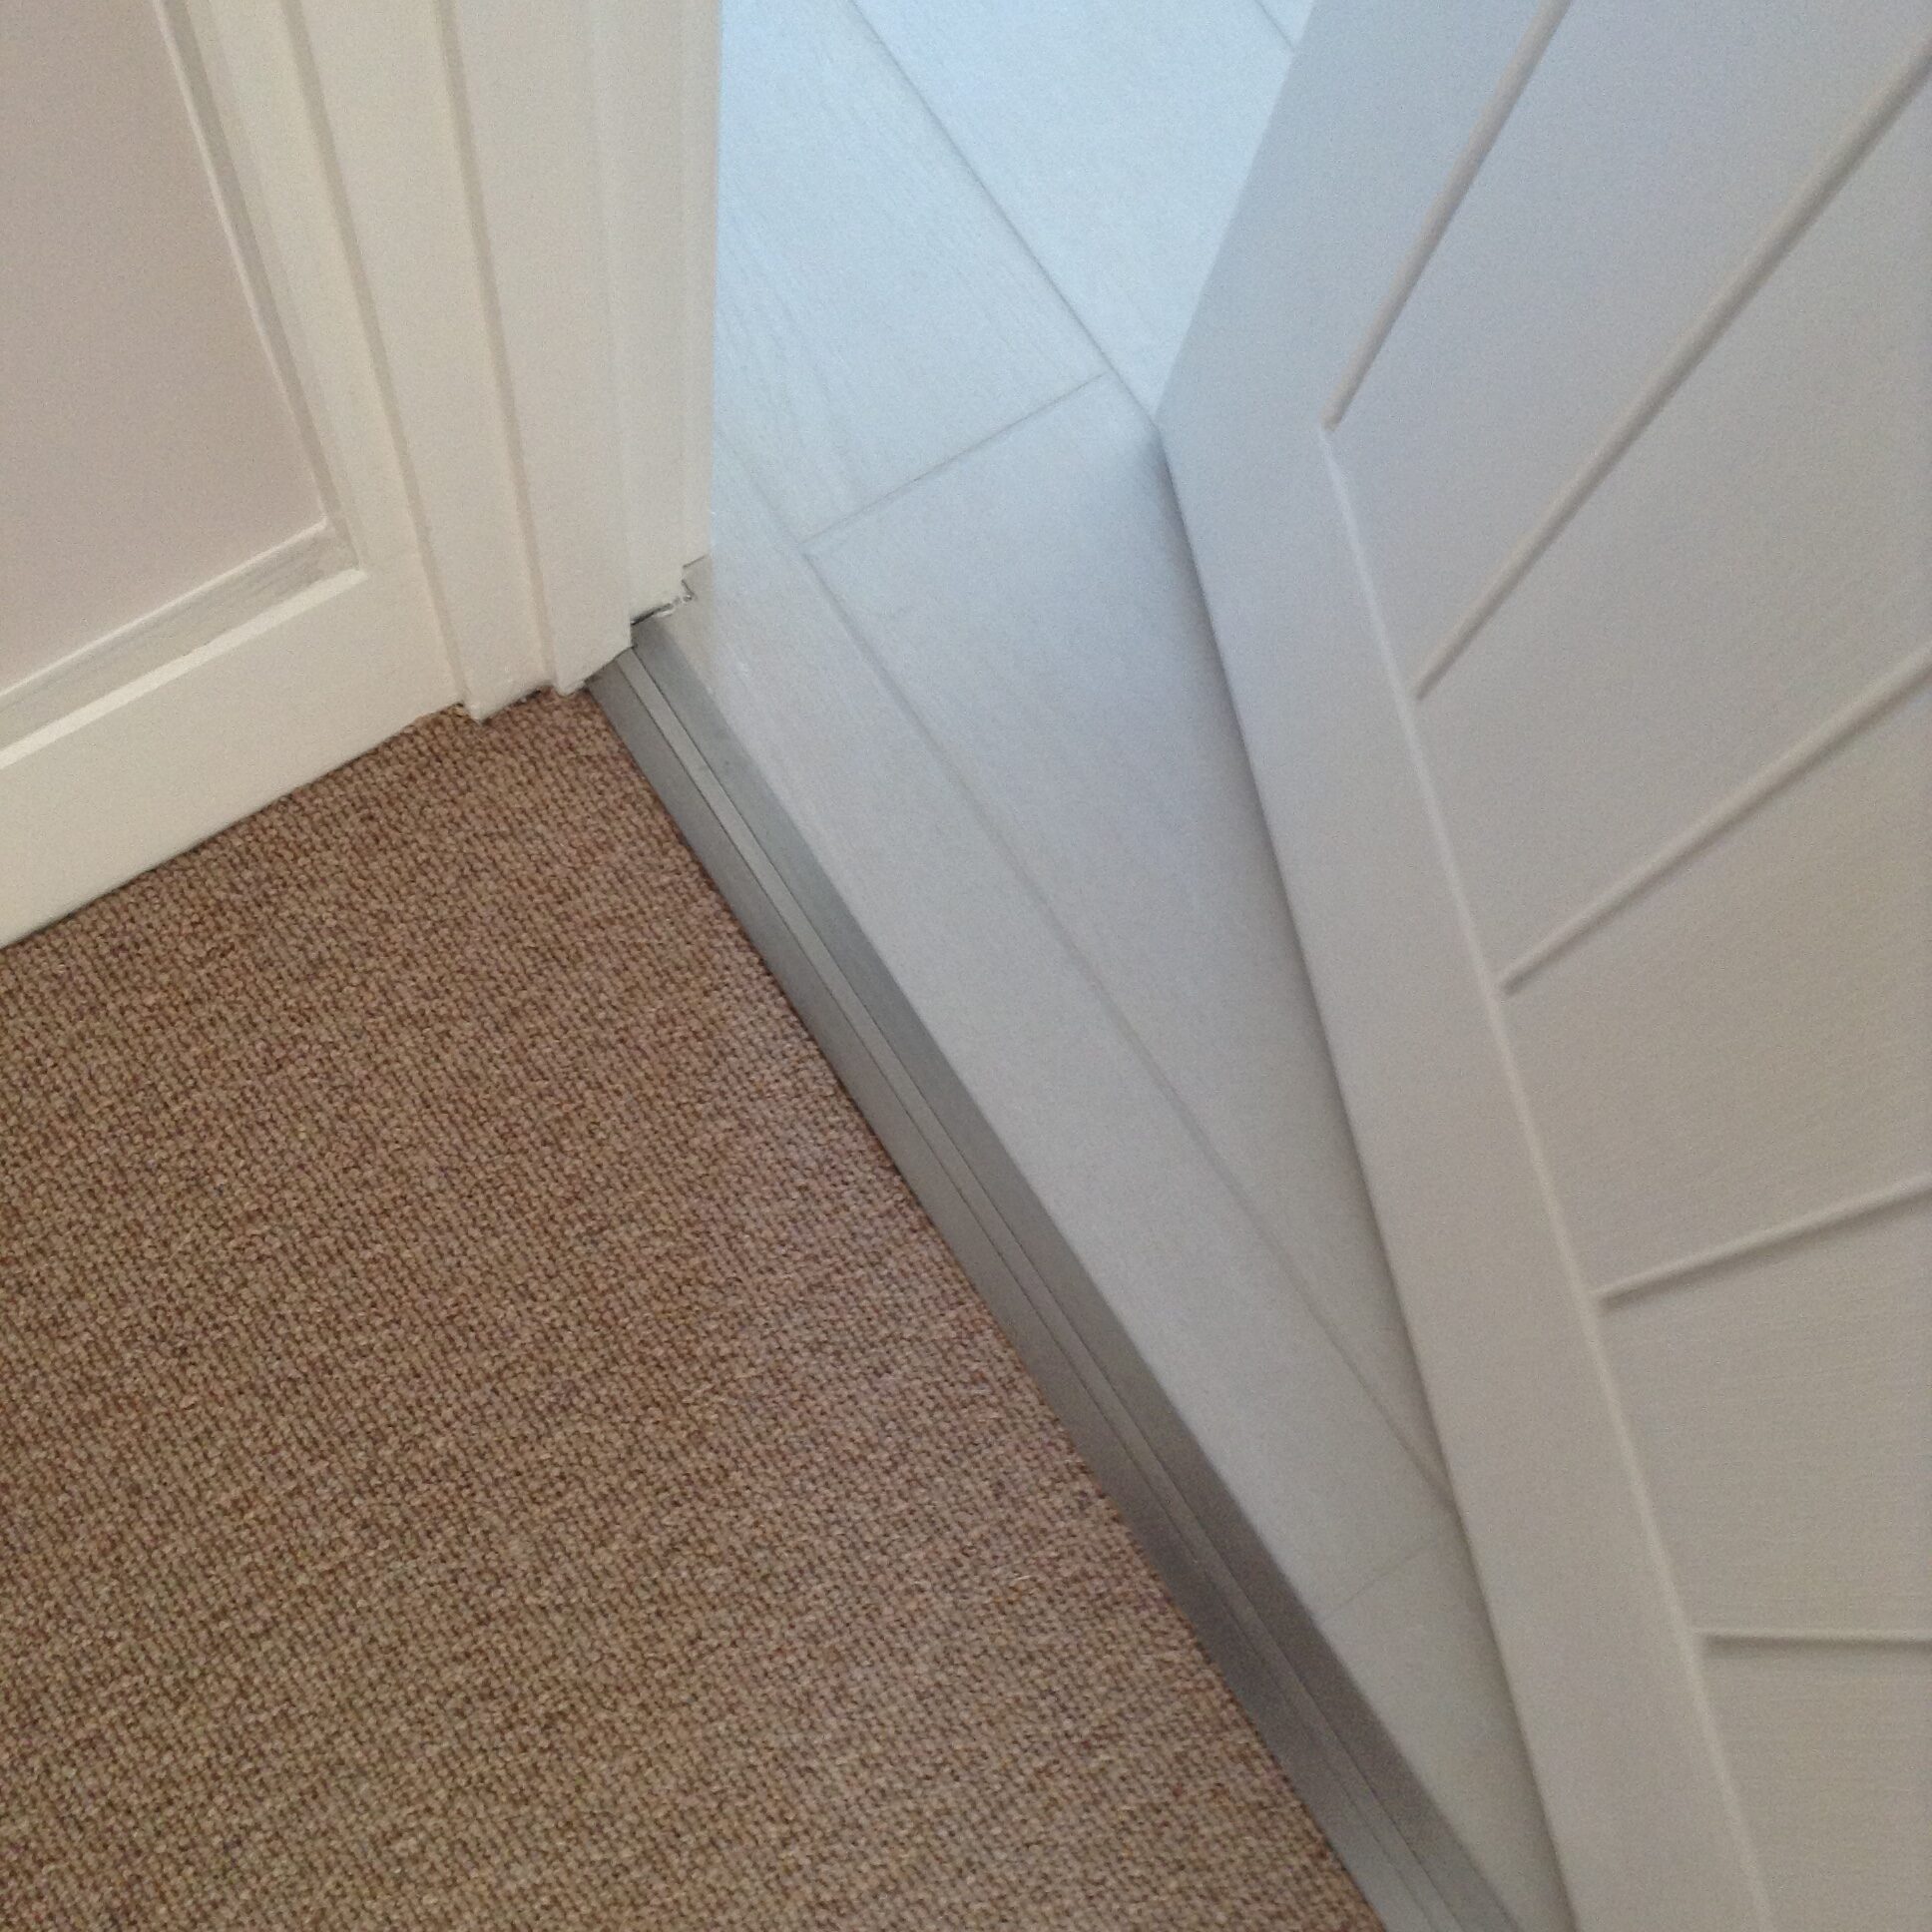 Door bar joining beige carpet to cream carpet with panelled door